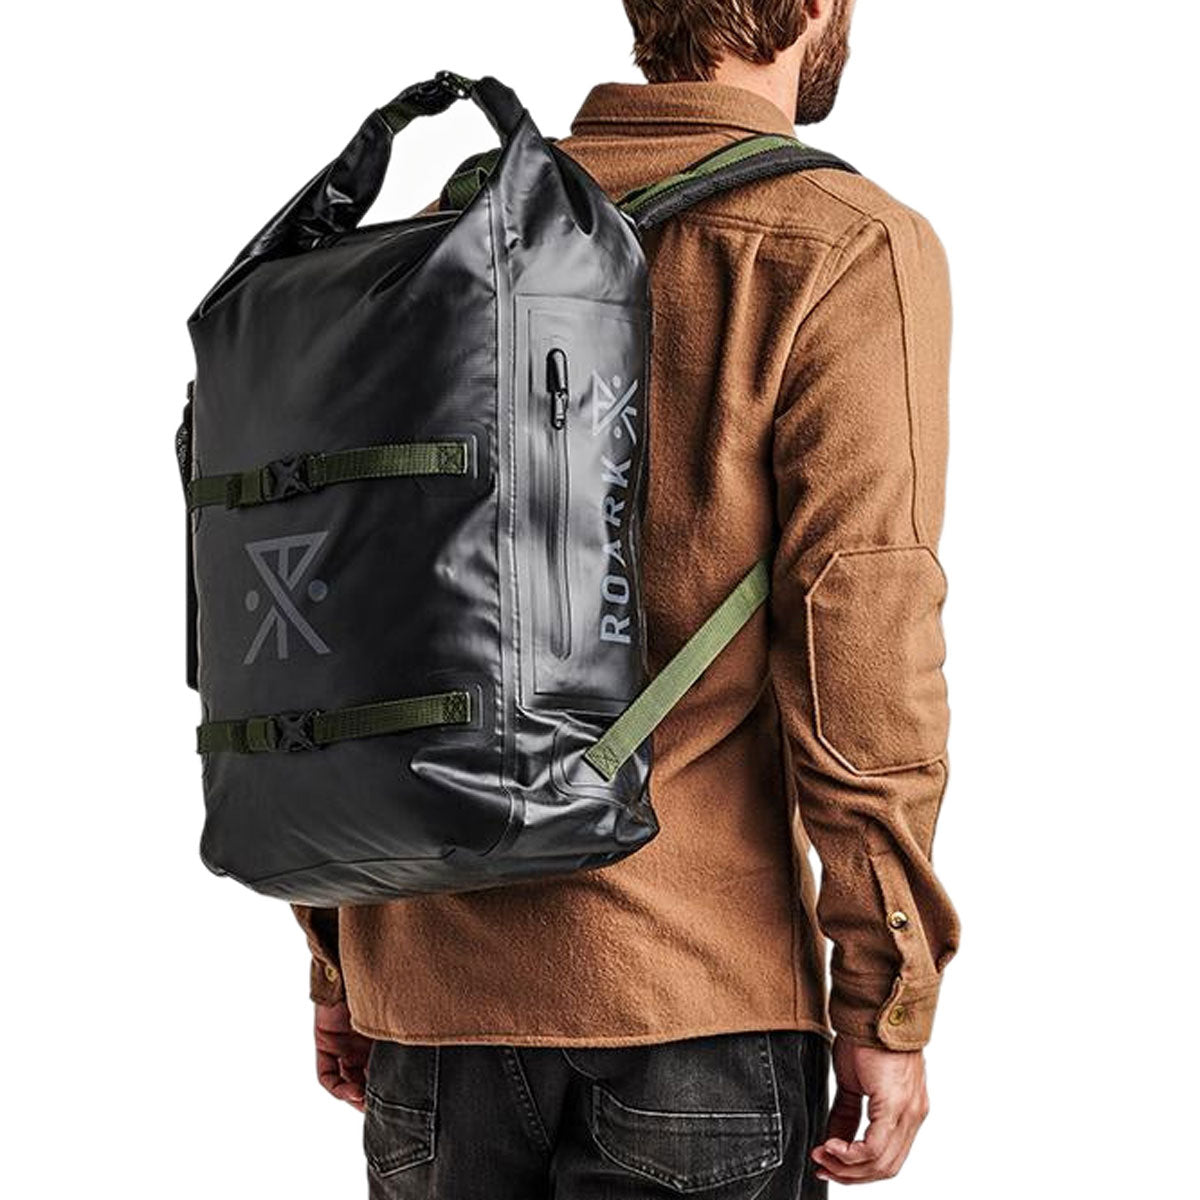 Roark Wet Dry Backpack - Black image 4